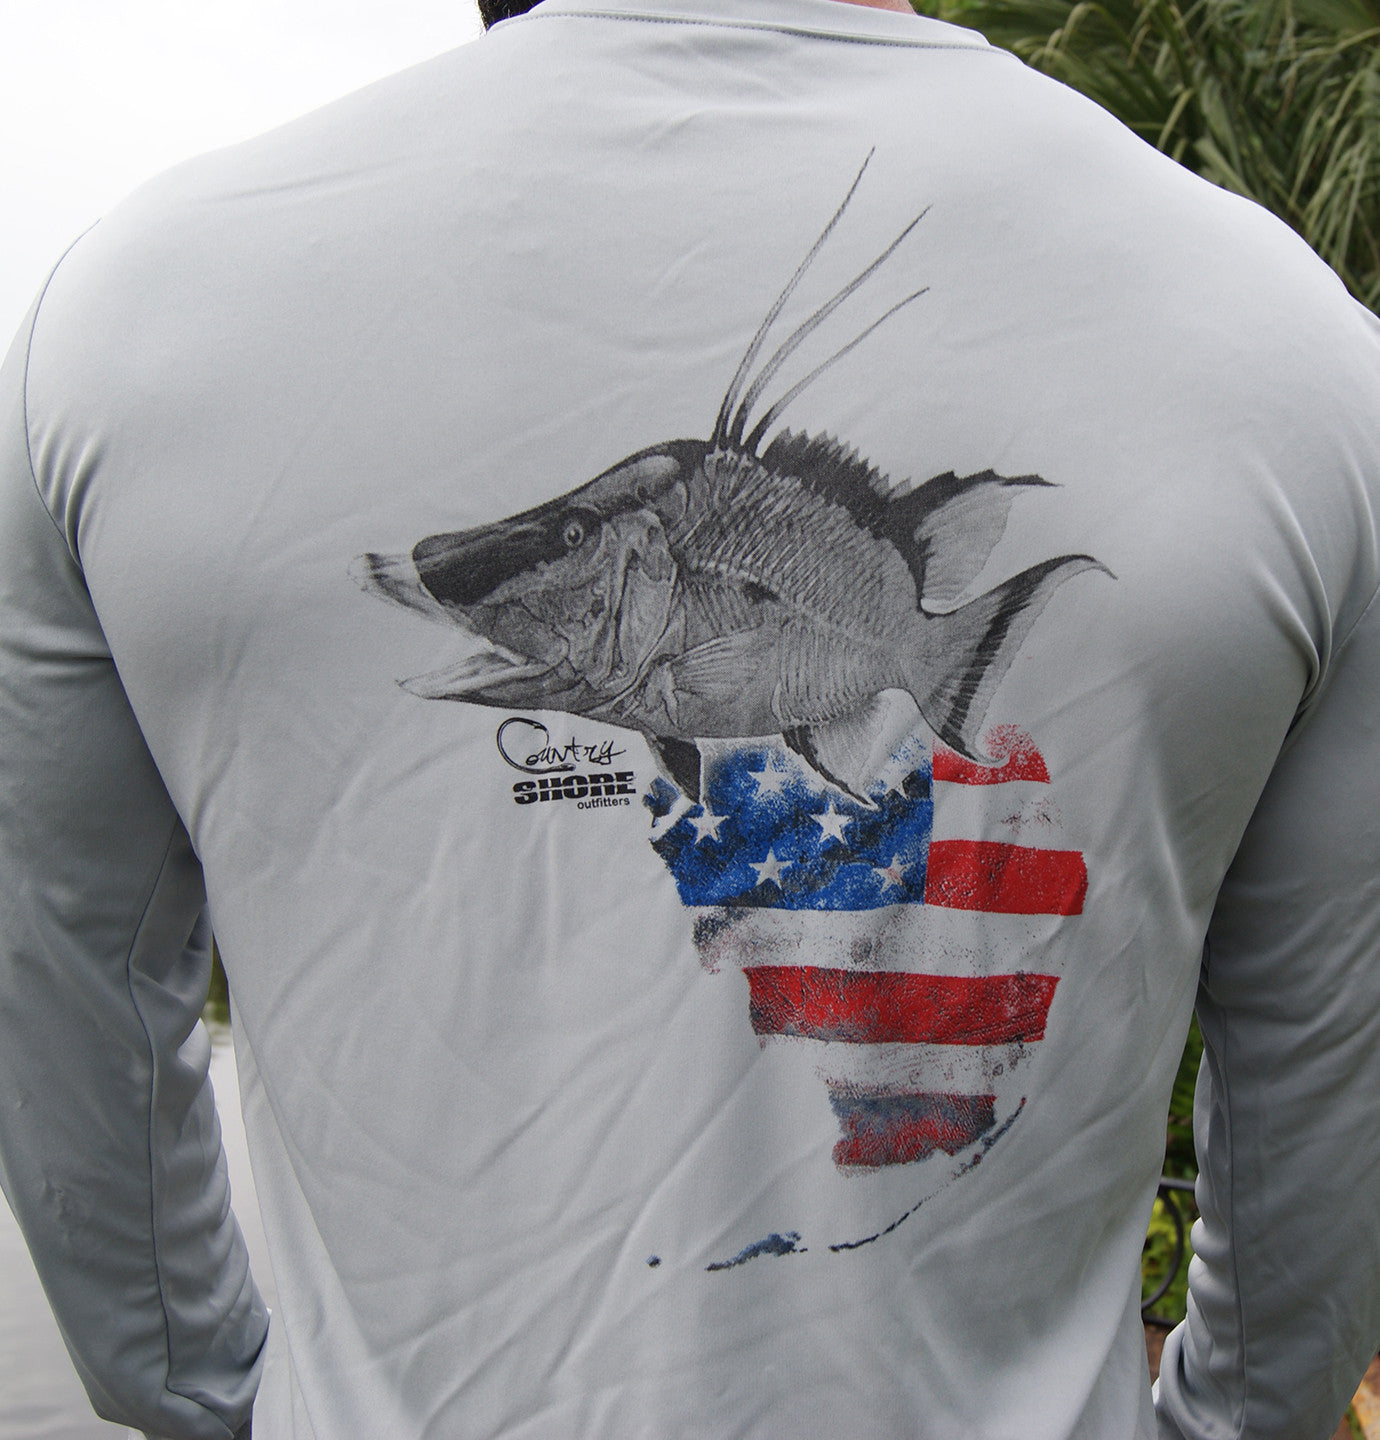 Long Sleeve UPF Shirt - Country Shore - Florida Hogfish Gray Small / Gray